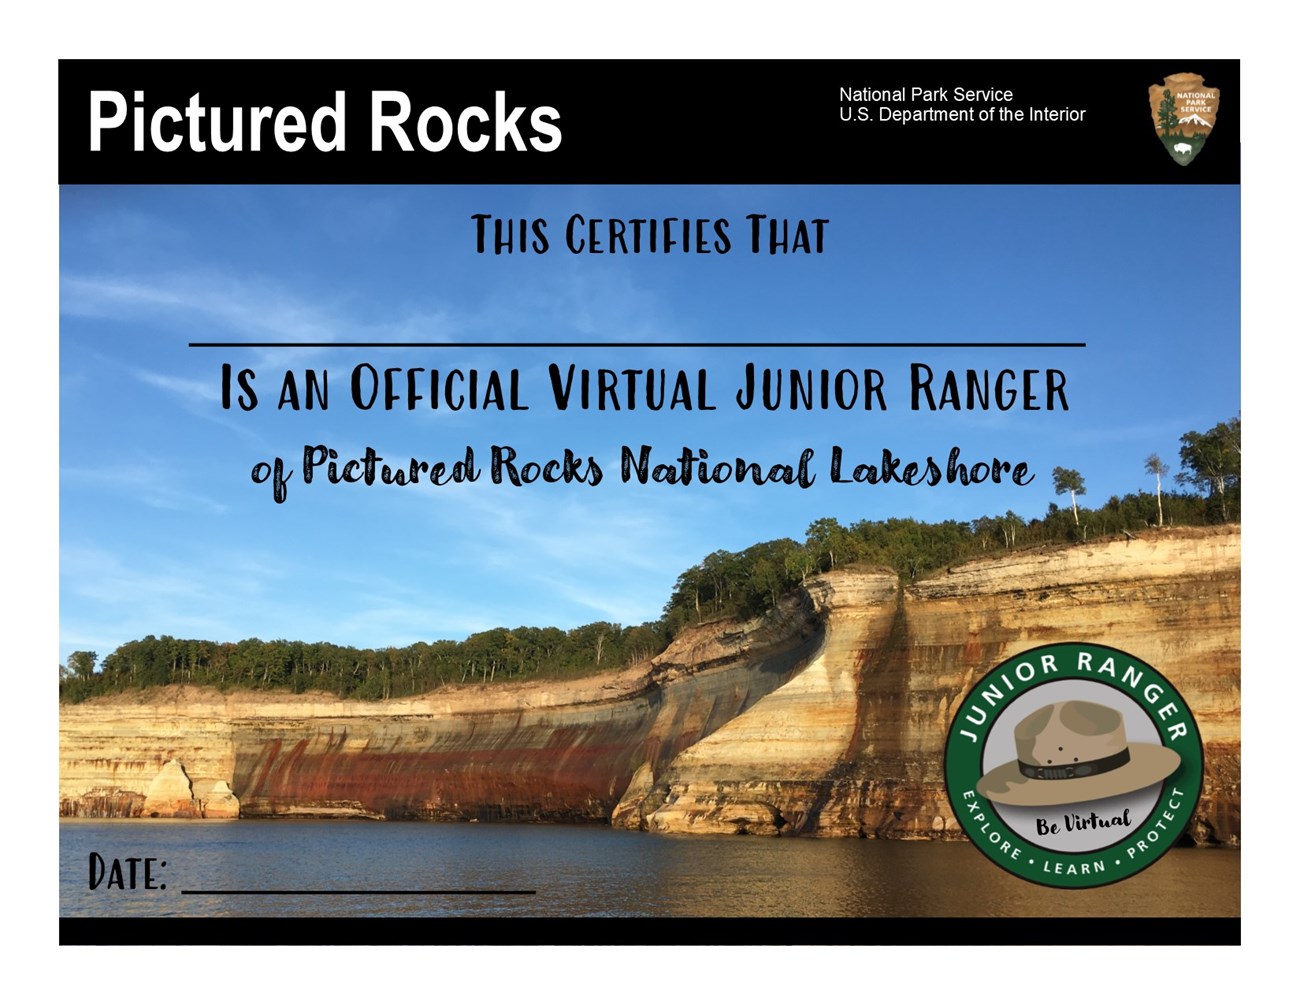 Virtual Junior Ranger Certificate